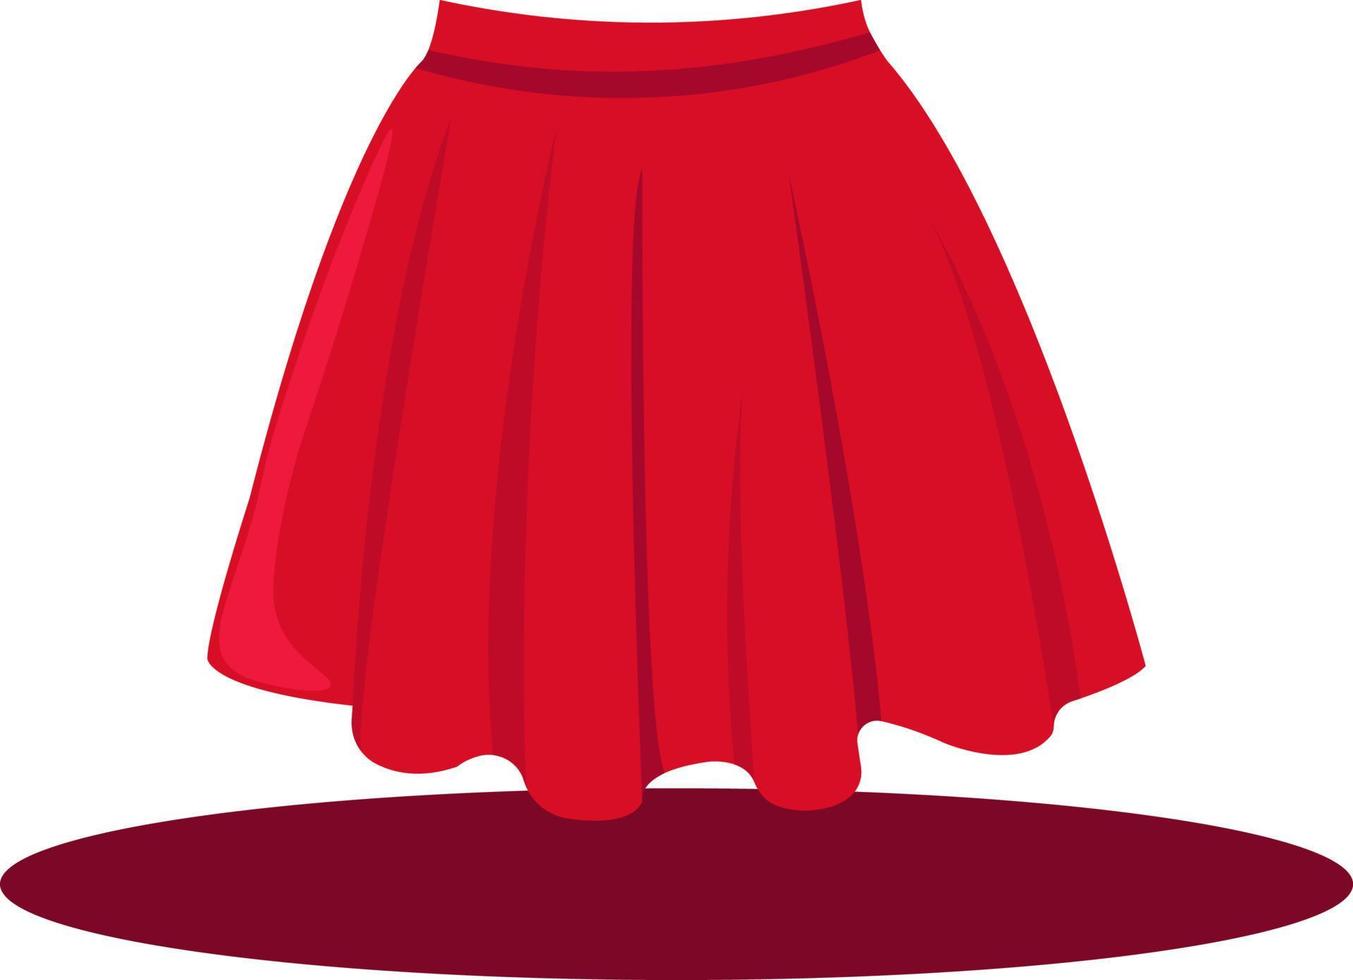 jupe femme rouge, illustration, vecteur sur fond blanc.